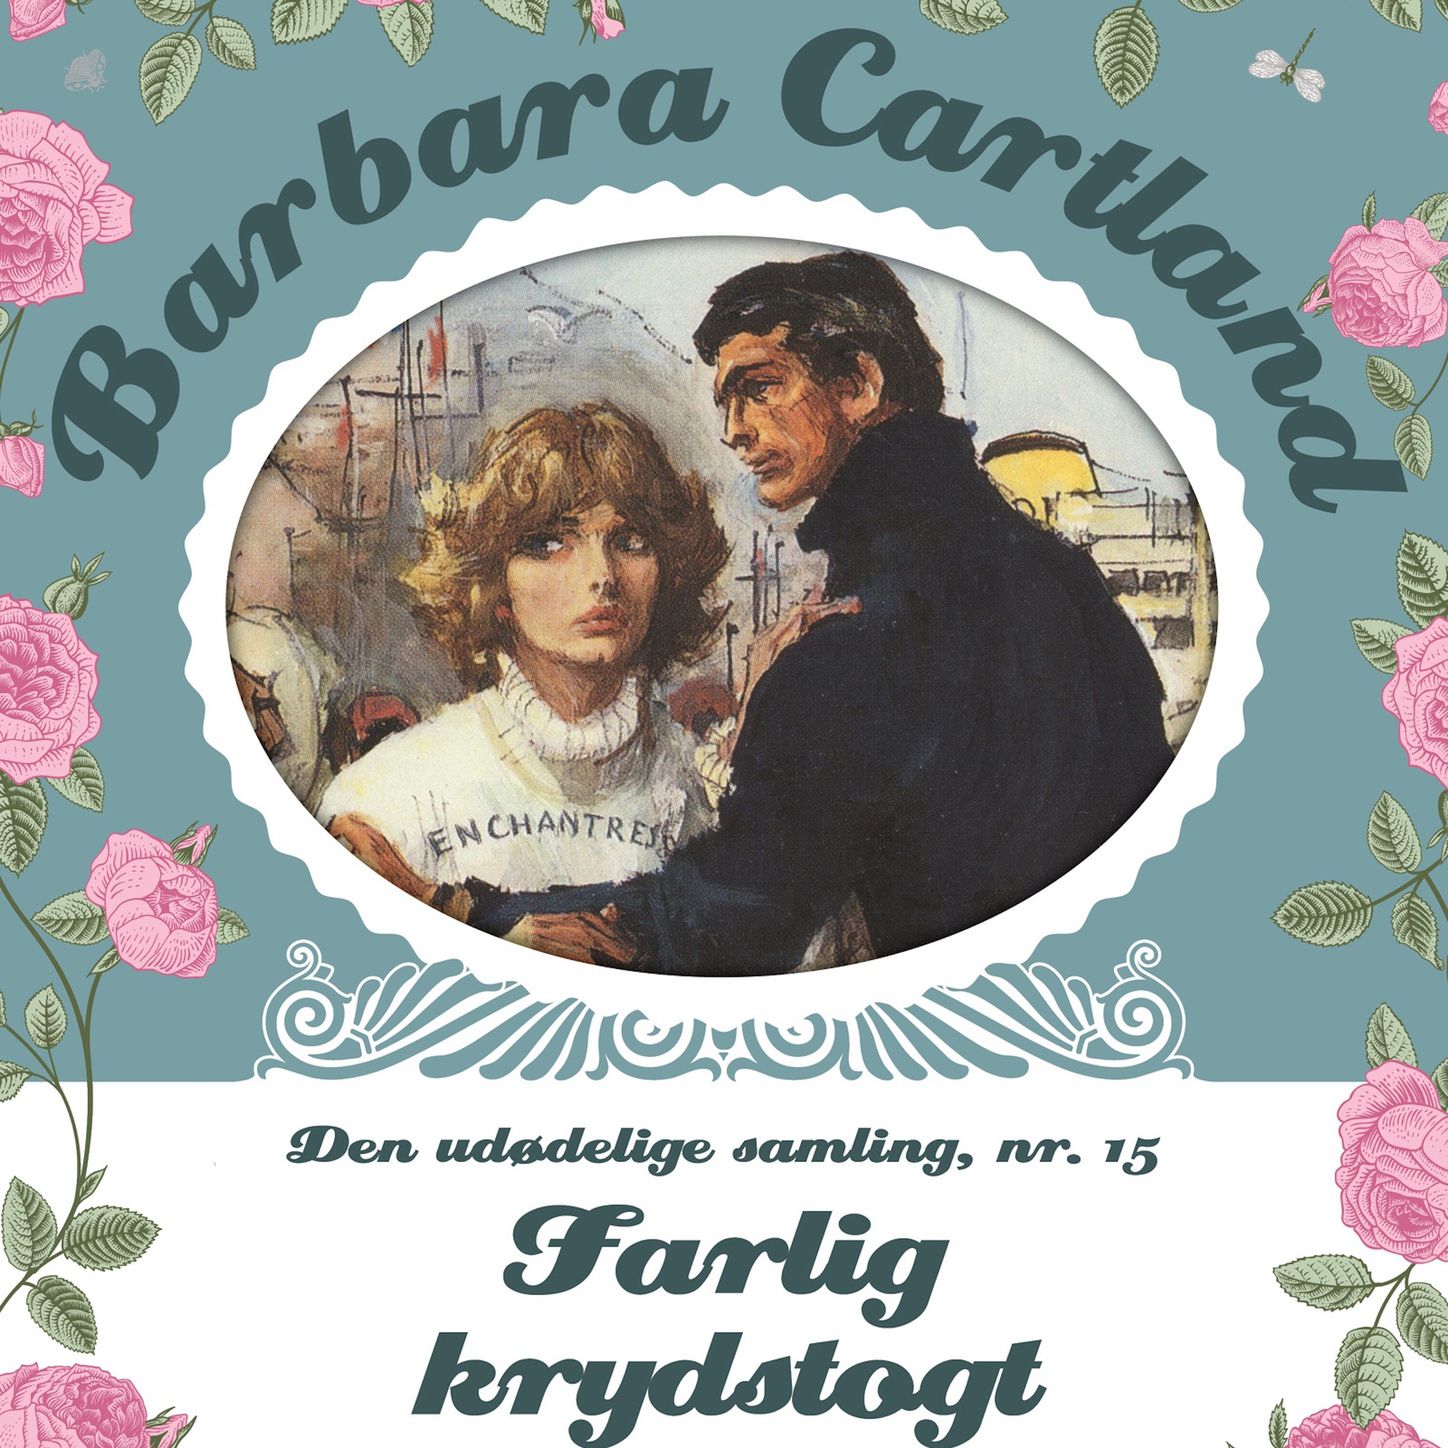 Farlig krydstogt  Barbara Cartland  Den ud delige samling 15, del050